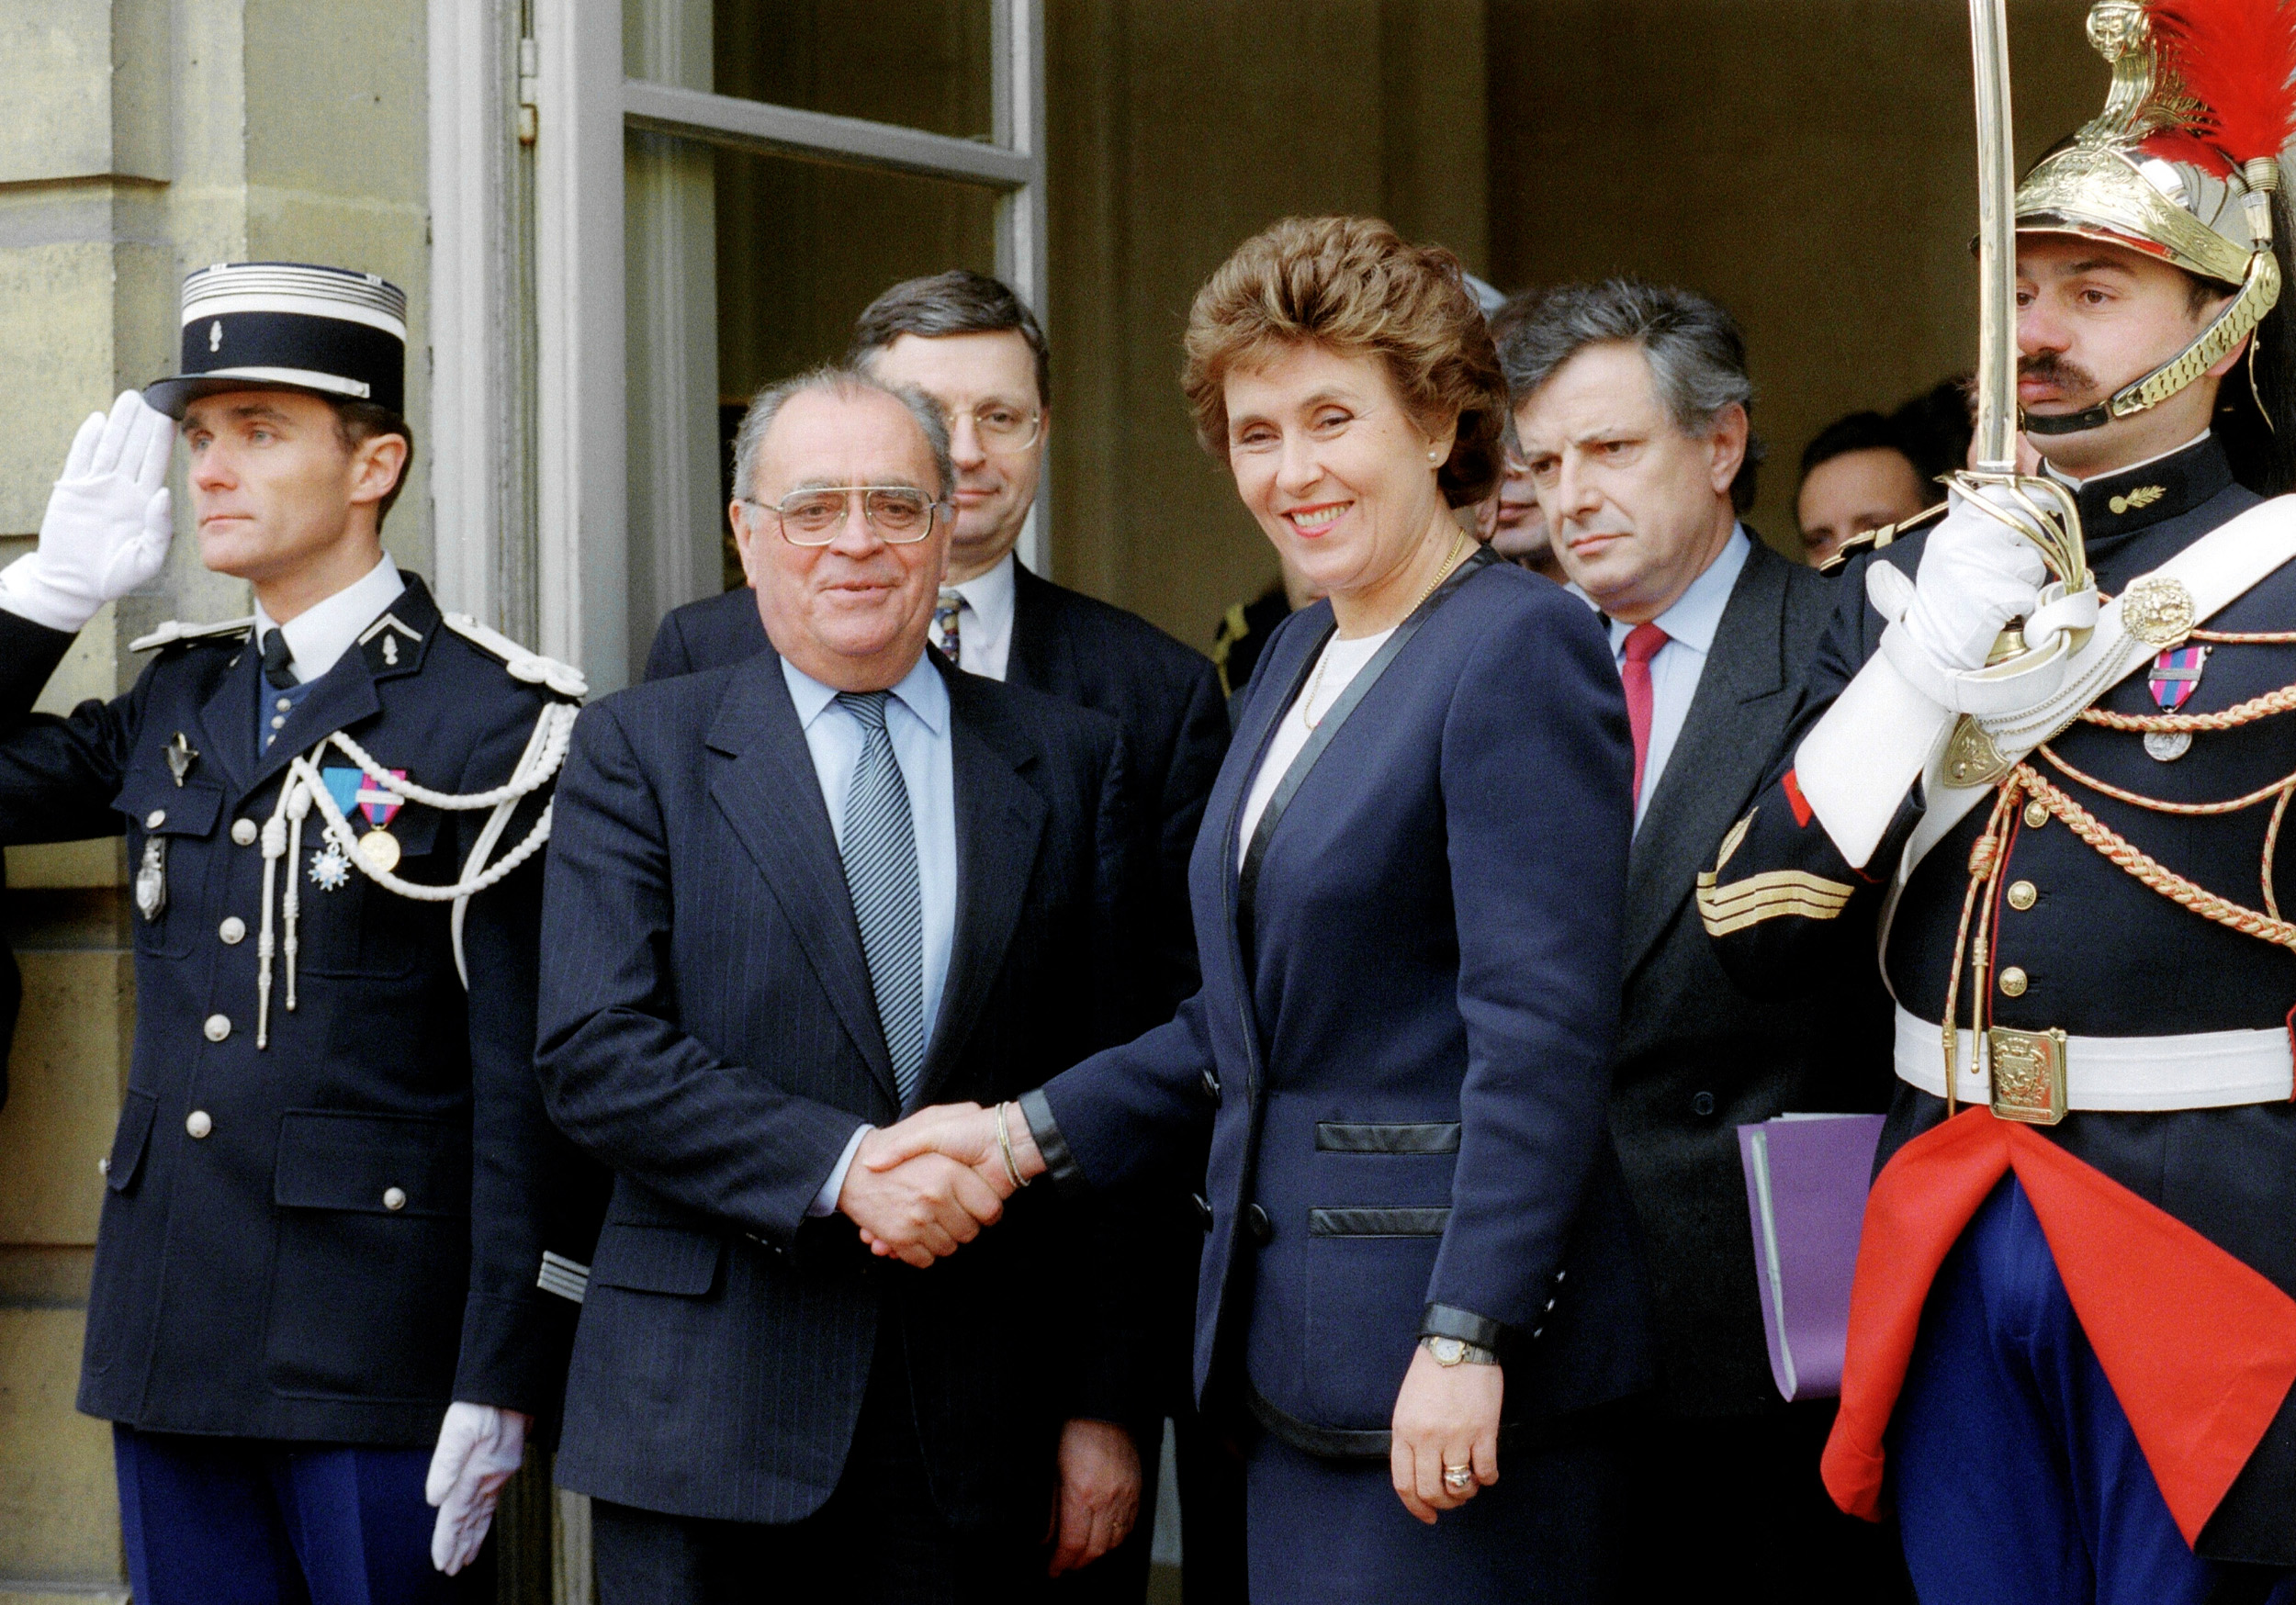 Pierre Bérégovoy et Edith Cresson, photographiés ici lors de la cérémonie de la passation de pouvoirs le 5 avril 1992 à Matignon, font partie des Premiers ministres n'ayant pas engagé leur responsabilité sur leur discours de politique générale. AFP/Eric Feferberg